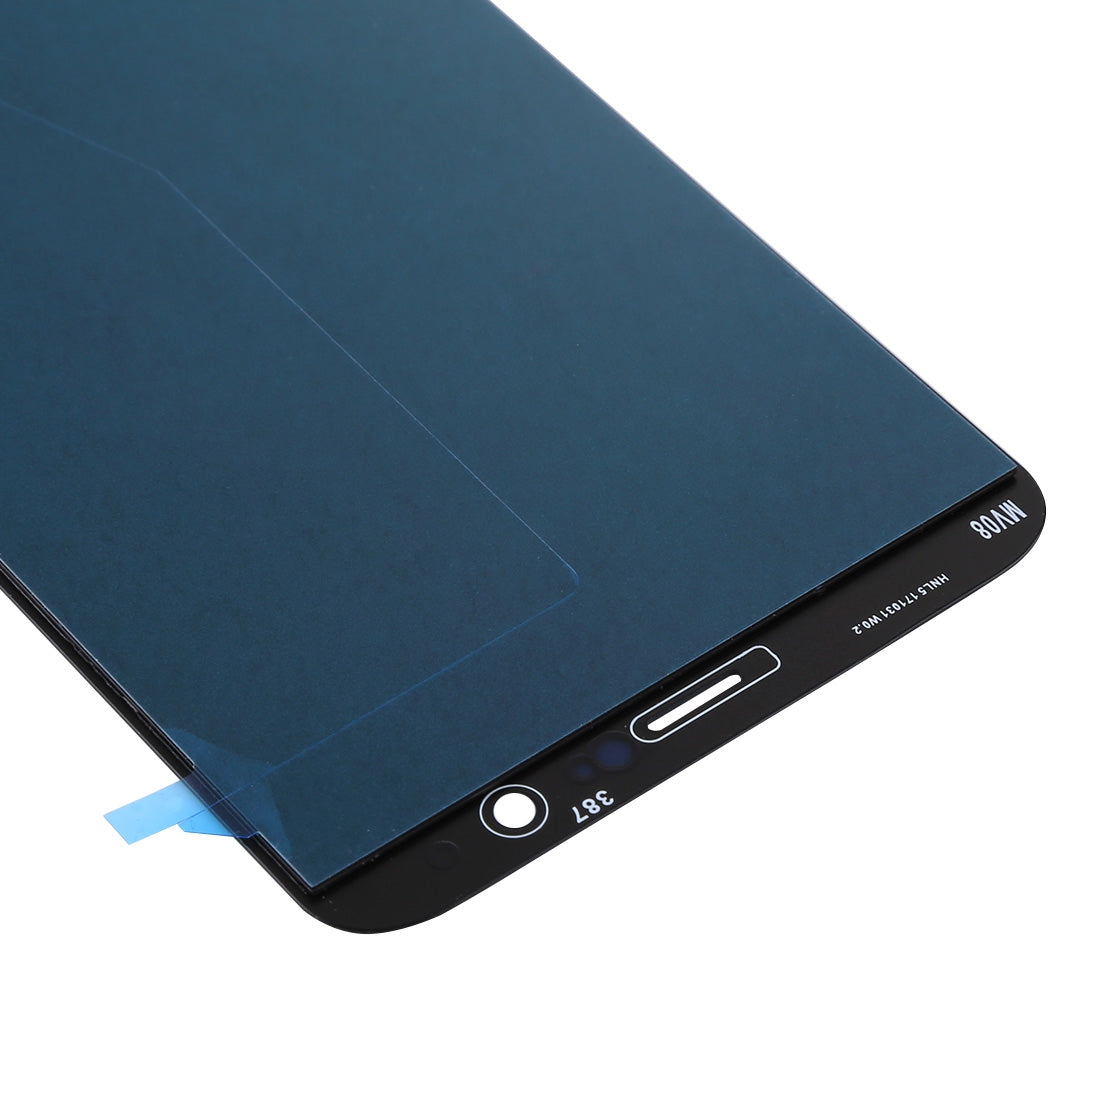 Ecran LCD + Vitre Tactile OnePlus 5T Noir